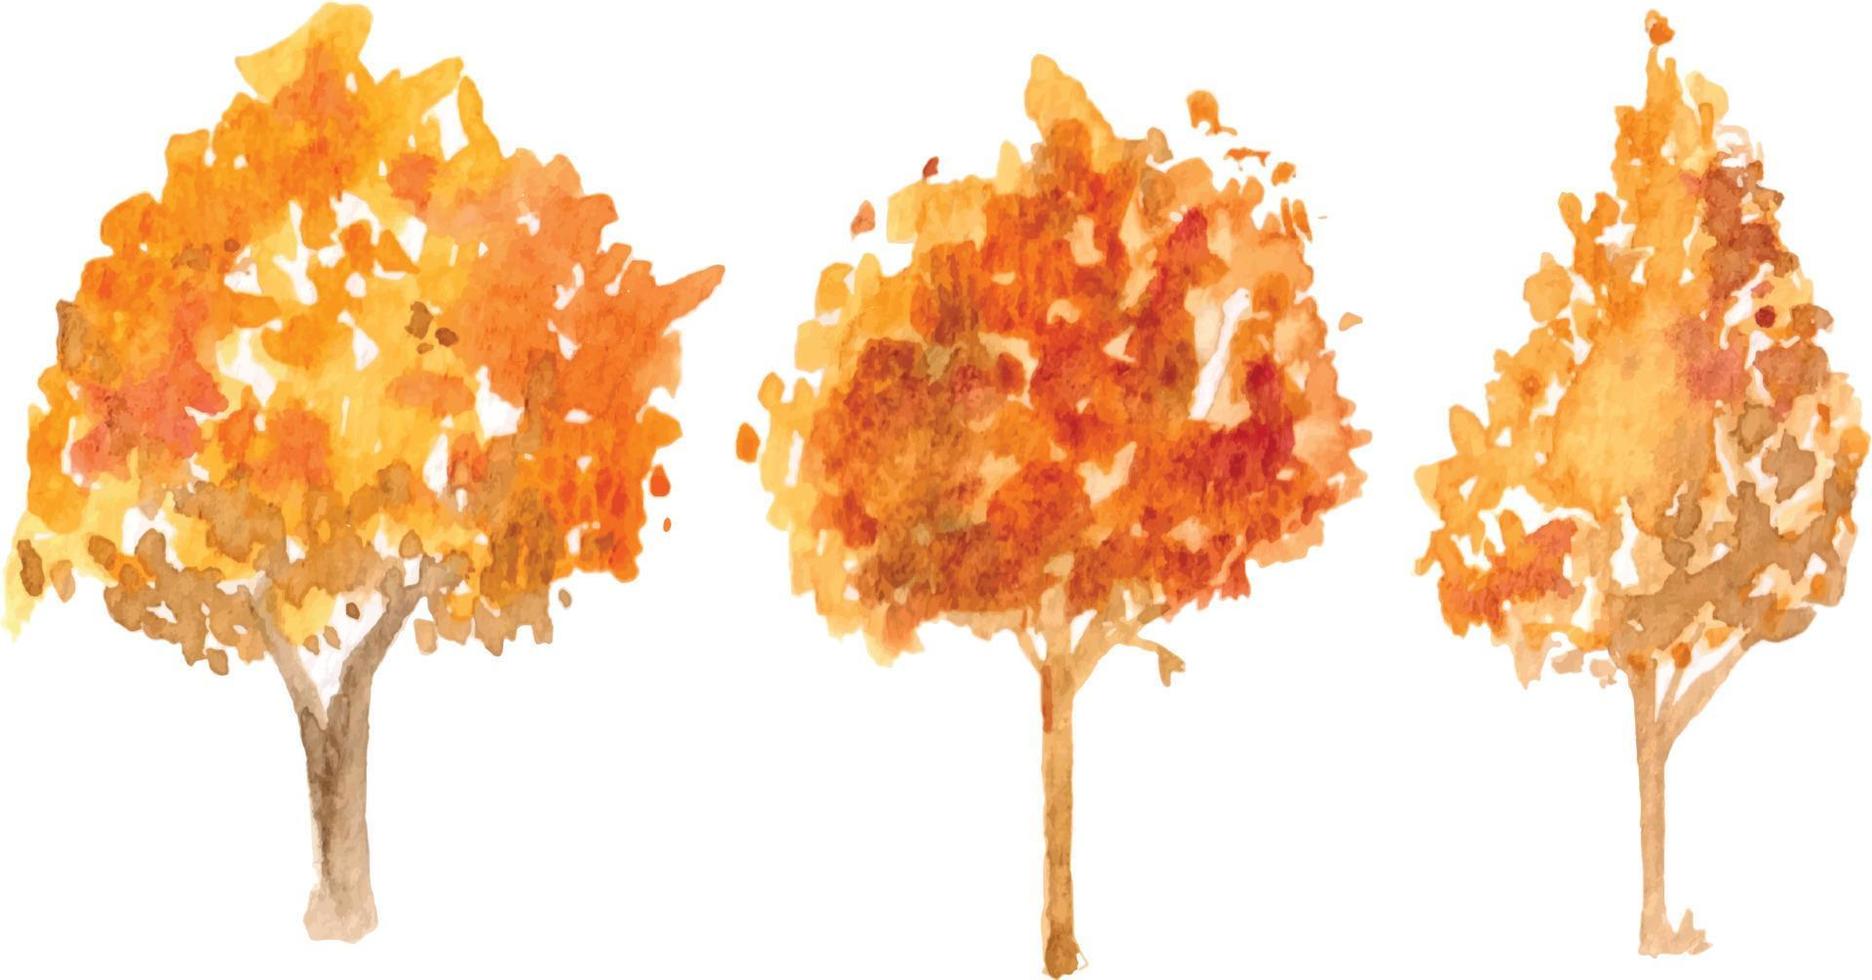 vetor mão desenhada outono árvore ilustração em aquarela sobre fundo branco.